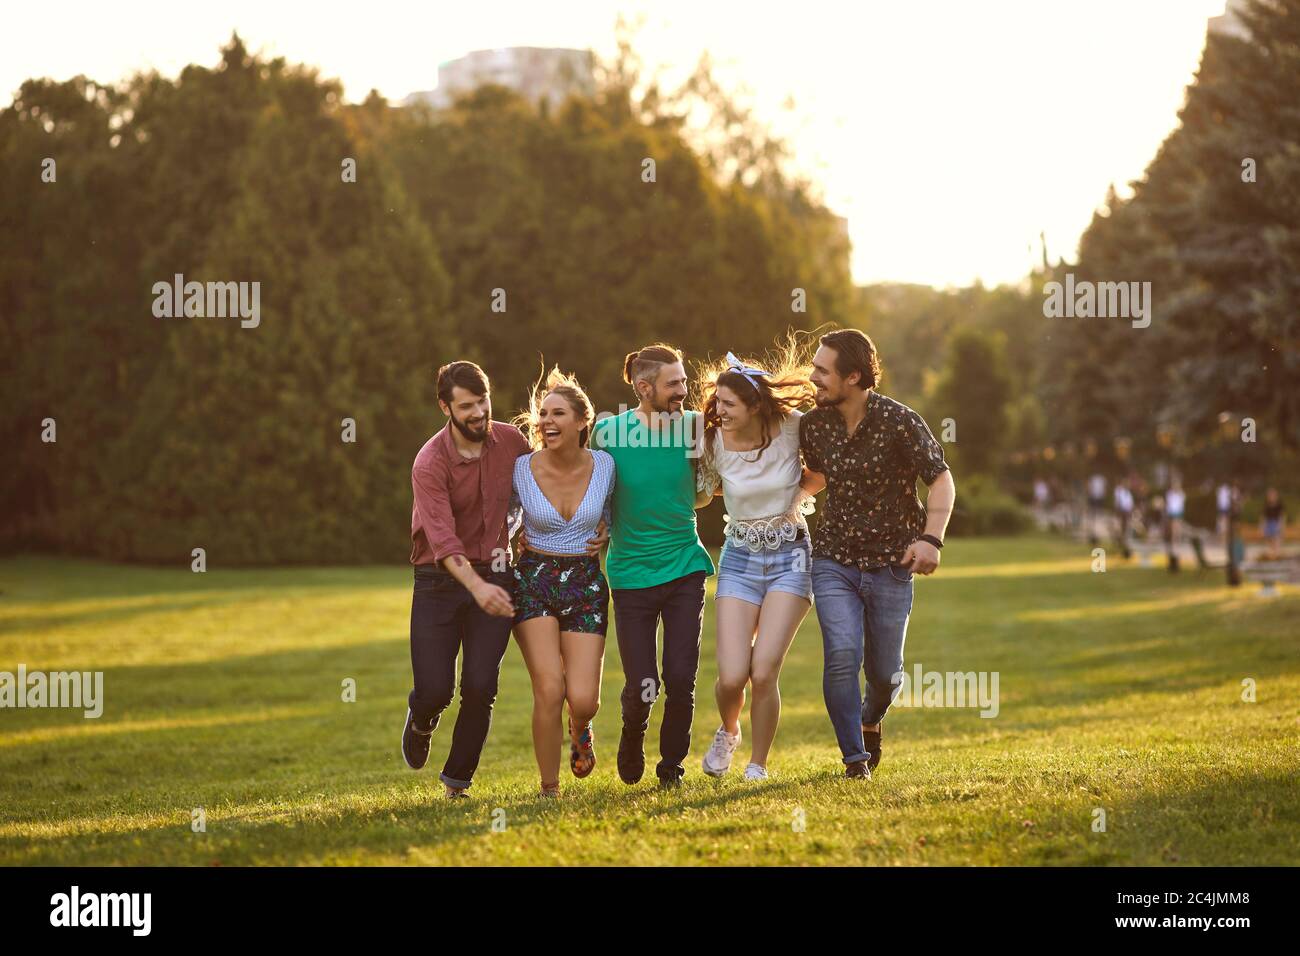 Un grupo de jóvenes se divierten abrazando la hierba en un parque de verano. Foto de stock